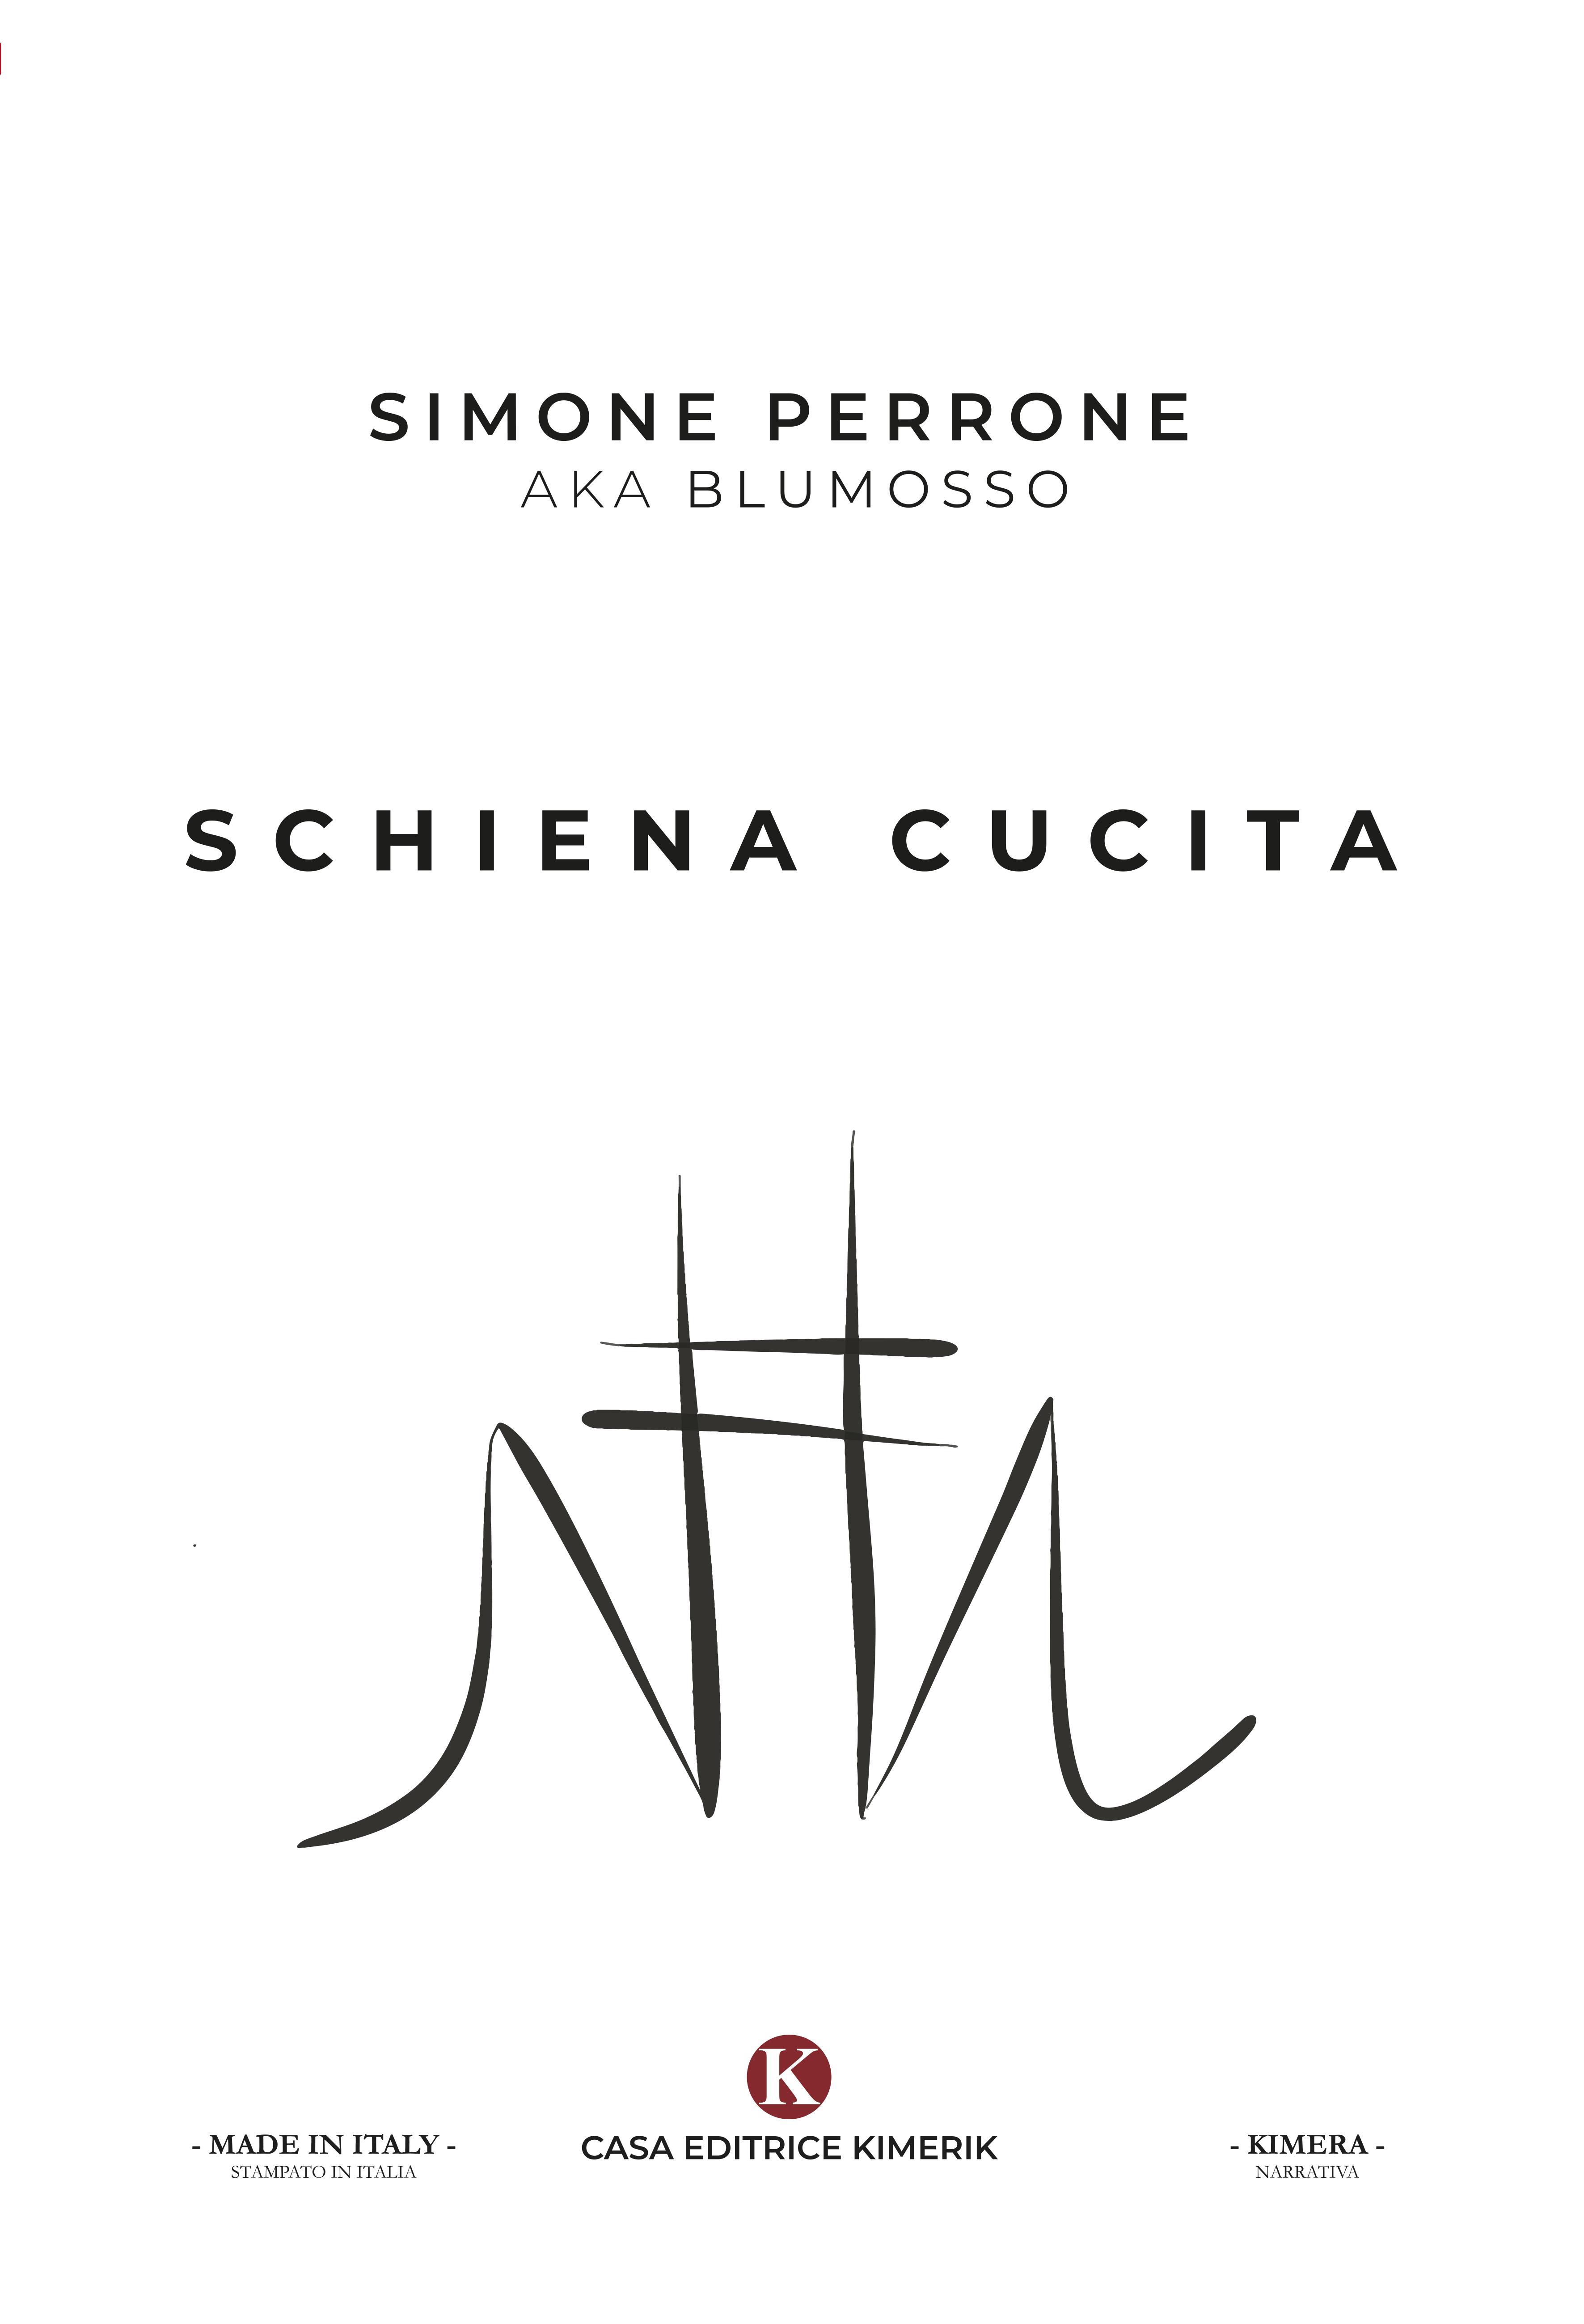  “Schiena cucita” di Simone Perrone